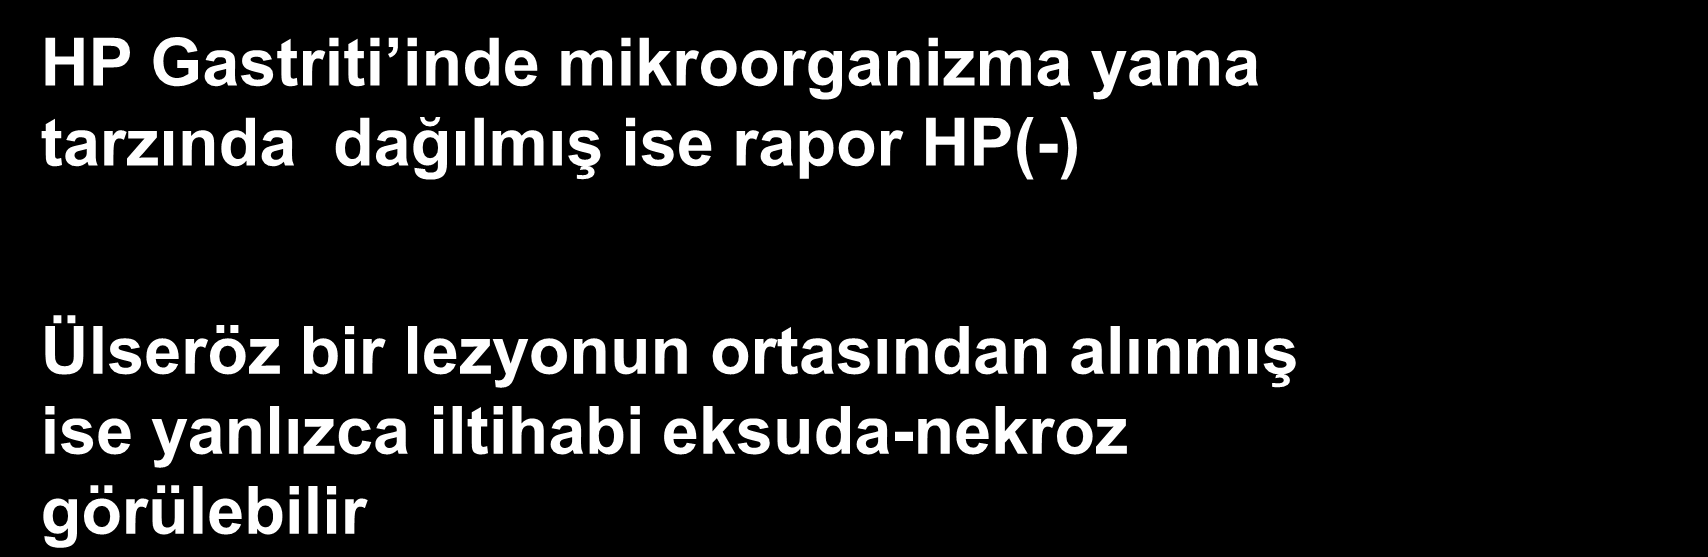 Teknik Nedenler Endoskopik biyopsinin doğru yerden ve yeterli sayıda alınmamış olması HP Gastriti inde mikroorganizma